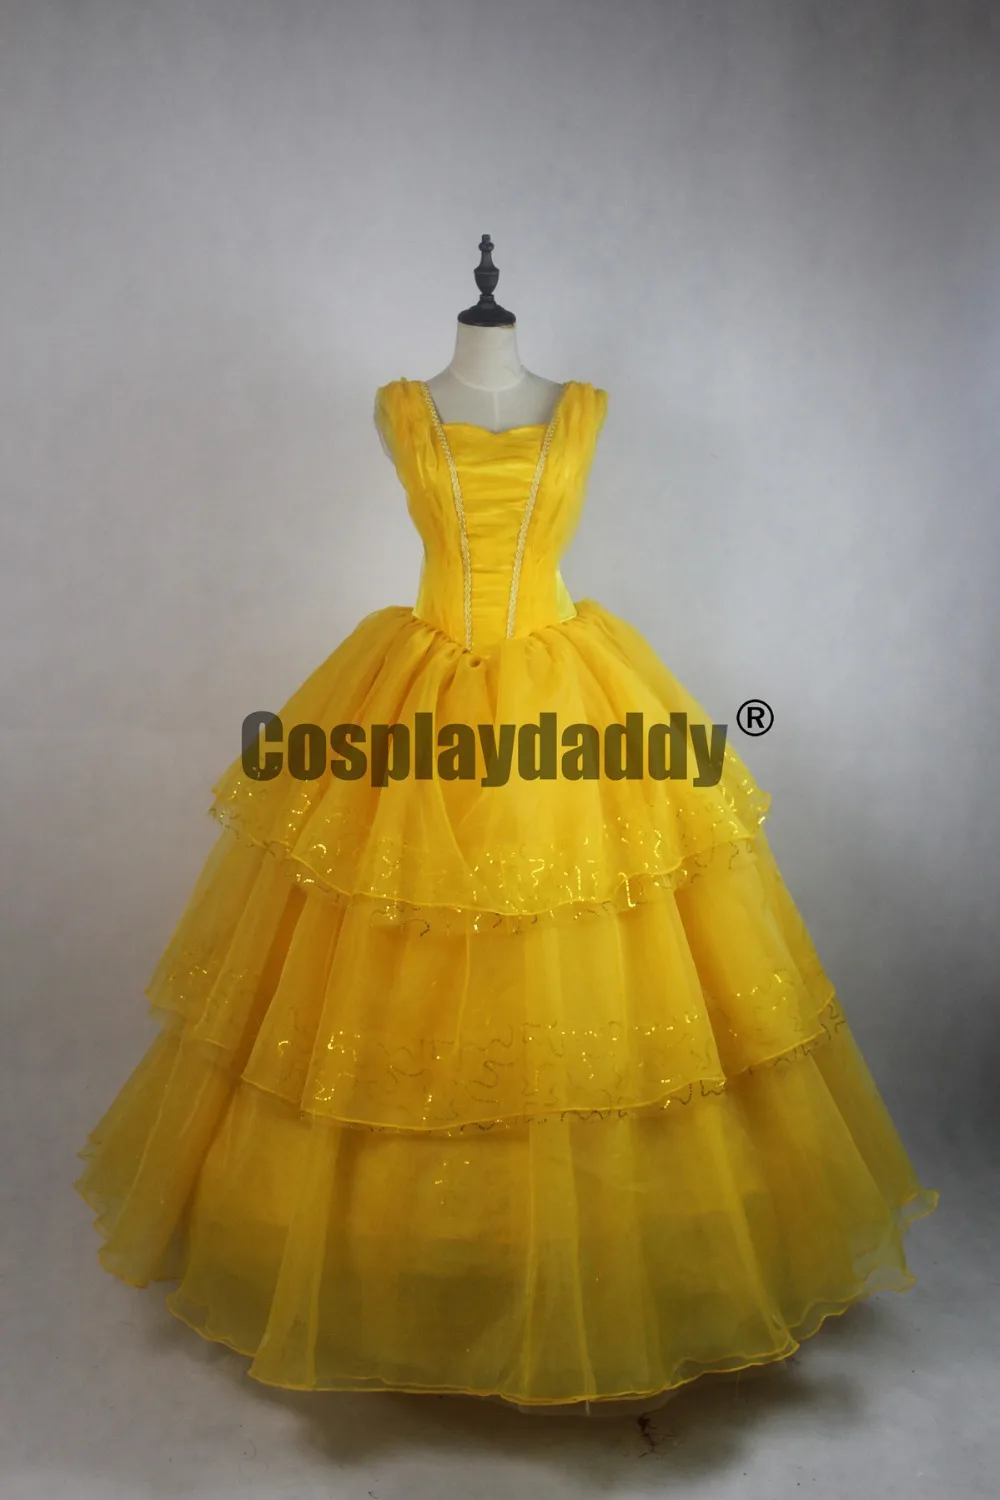 

Новое желтое бальное платье принцессы Белль Лолита из фильма «Красавица и Чудовище», костюм для косплея